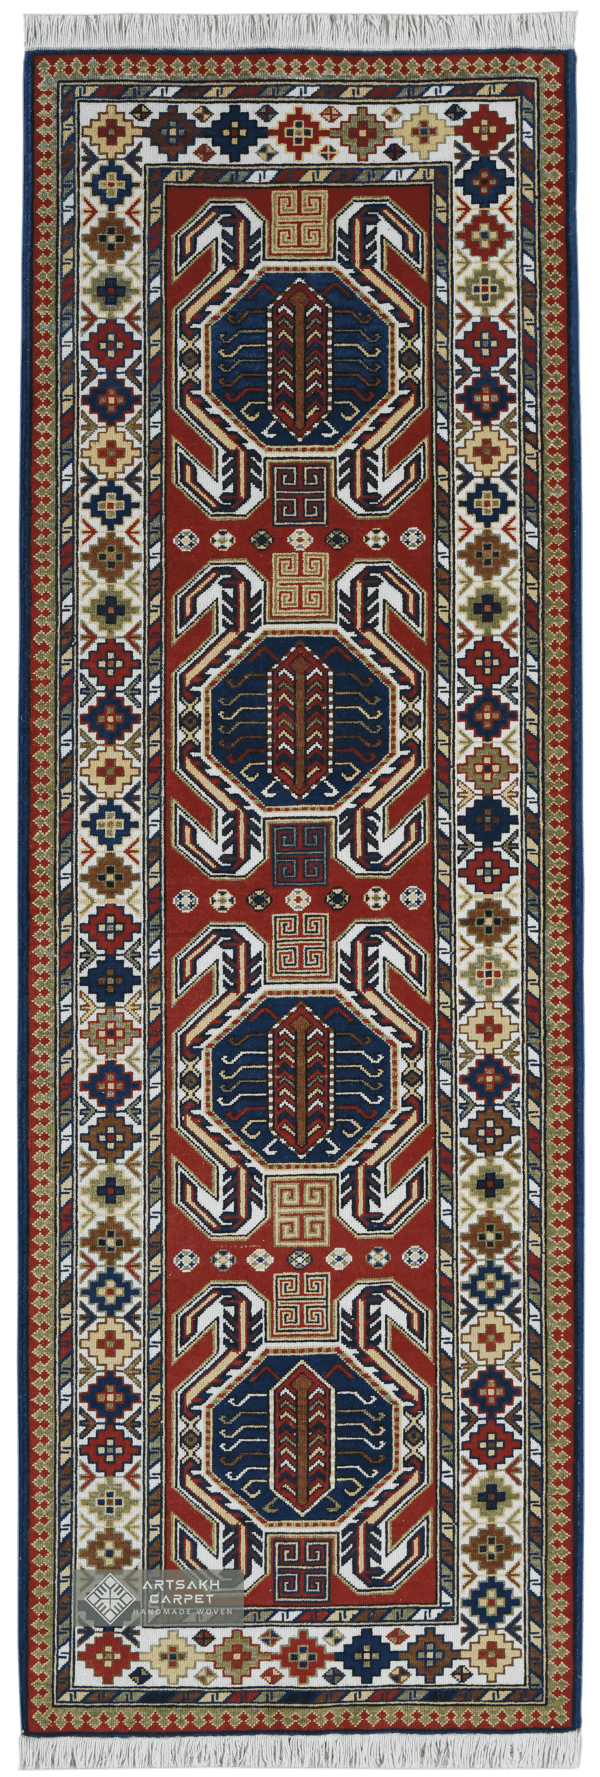 Armenian Carpet - Vorotan Dizak